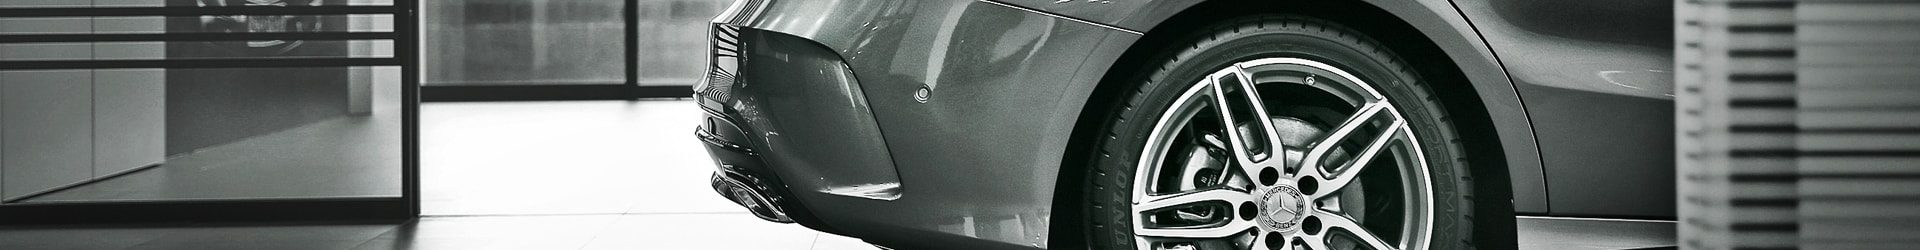 –暗夜蝙蝠– BMW E92 M3 Coupe 消光灰 拍攝開箱